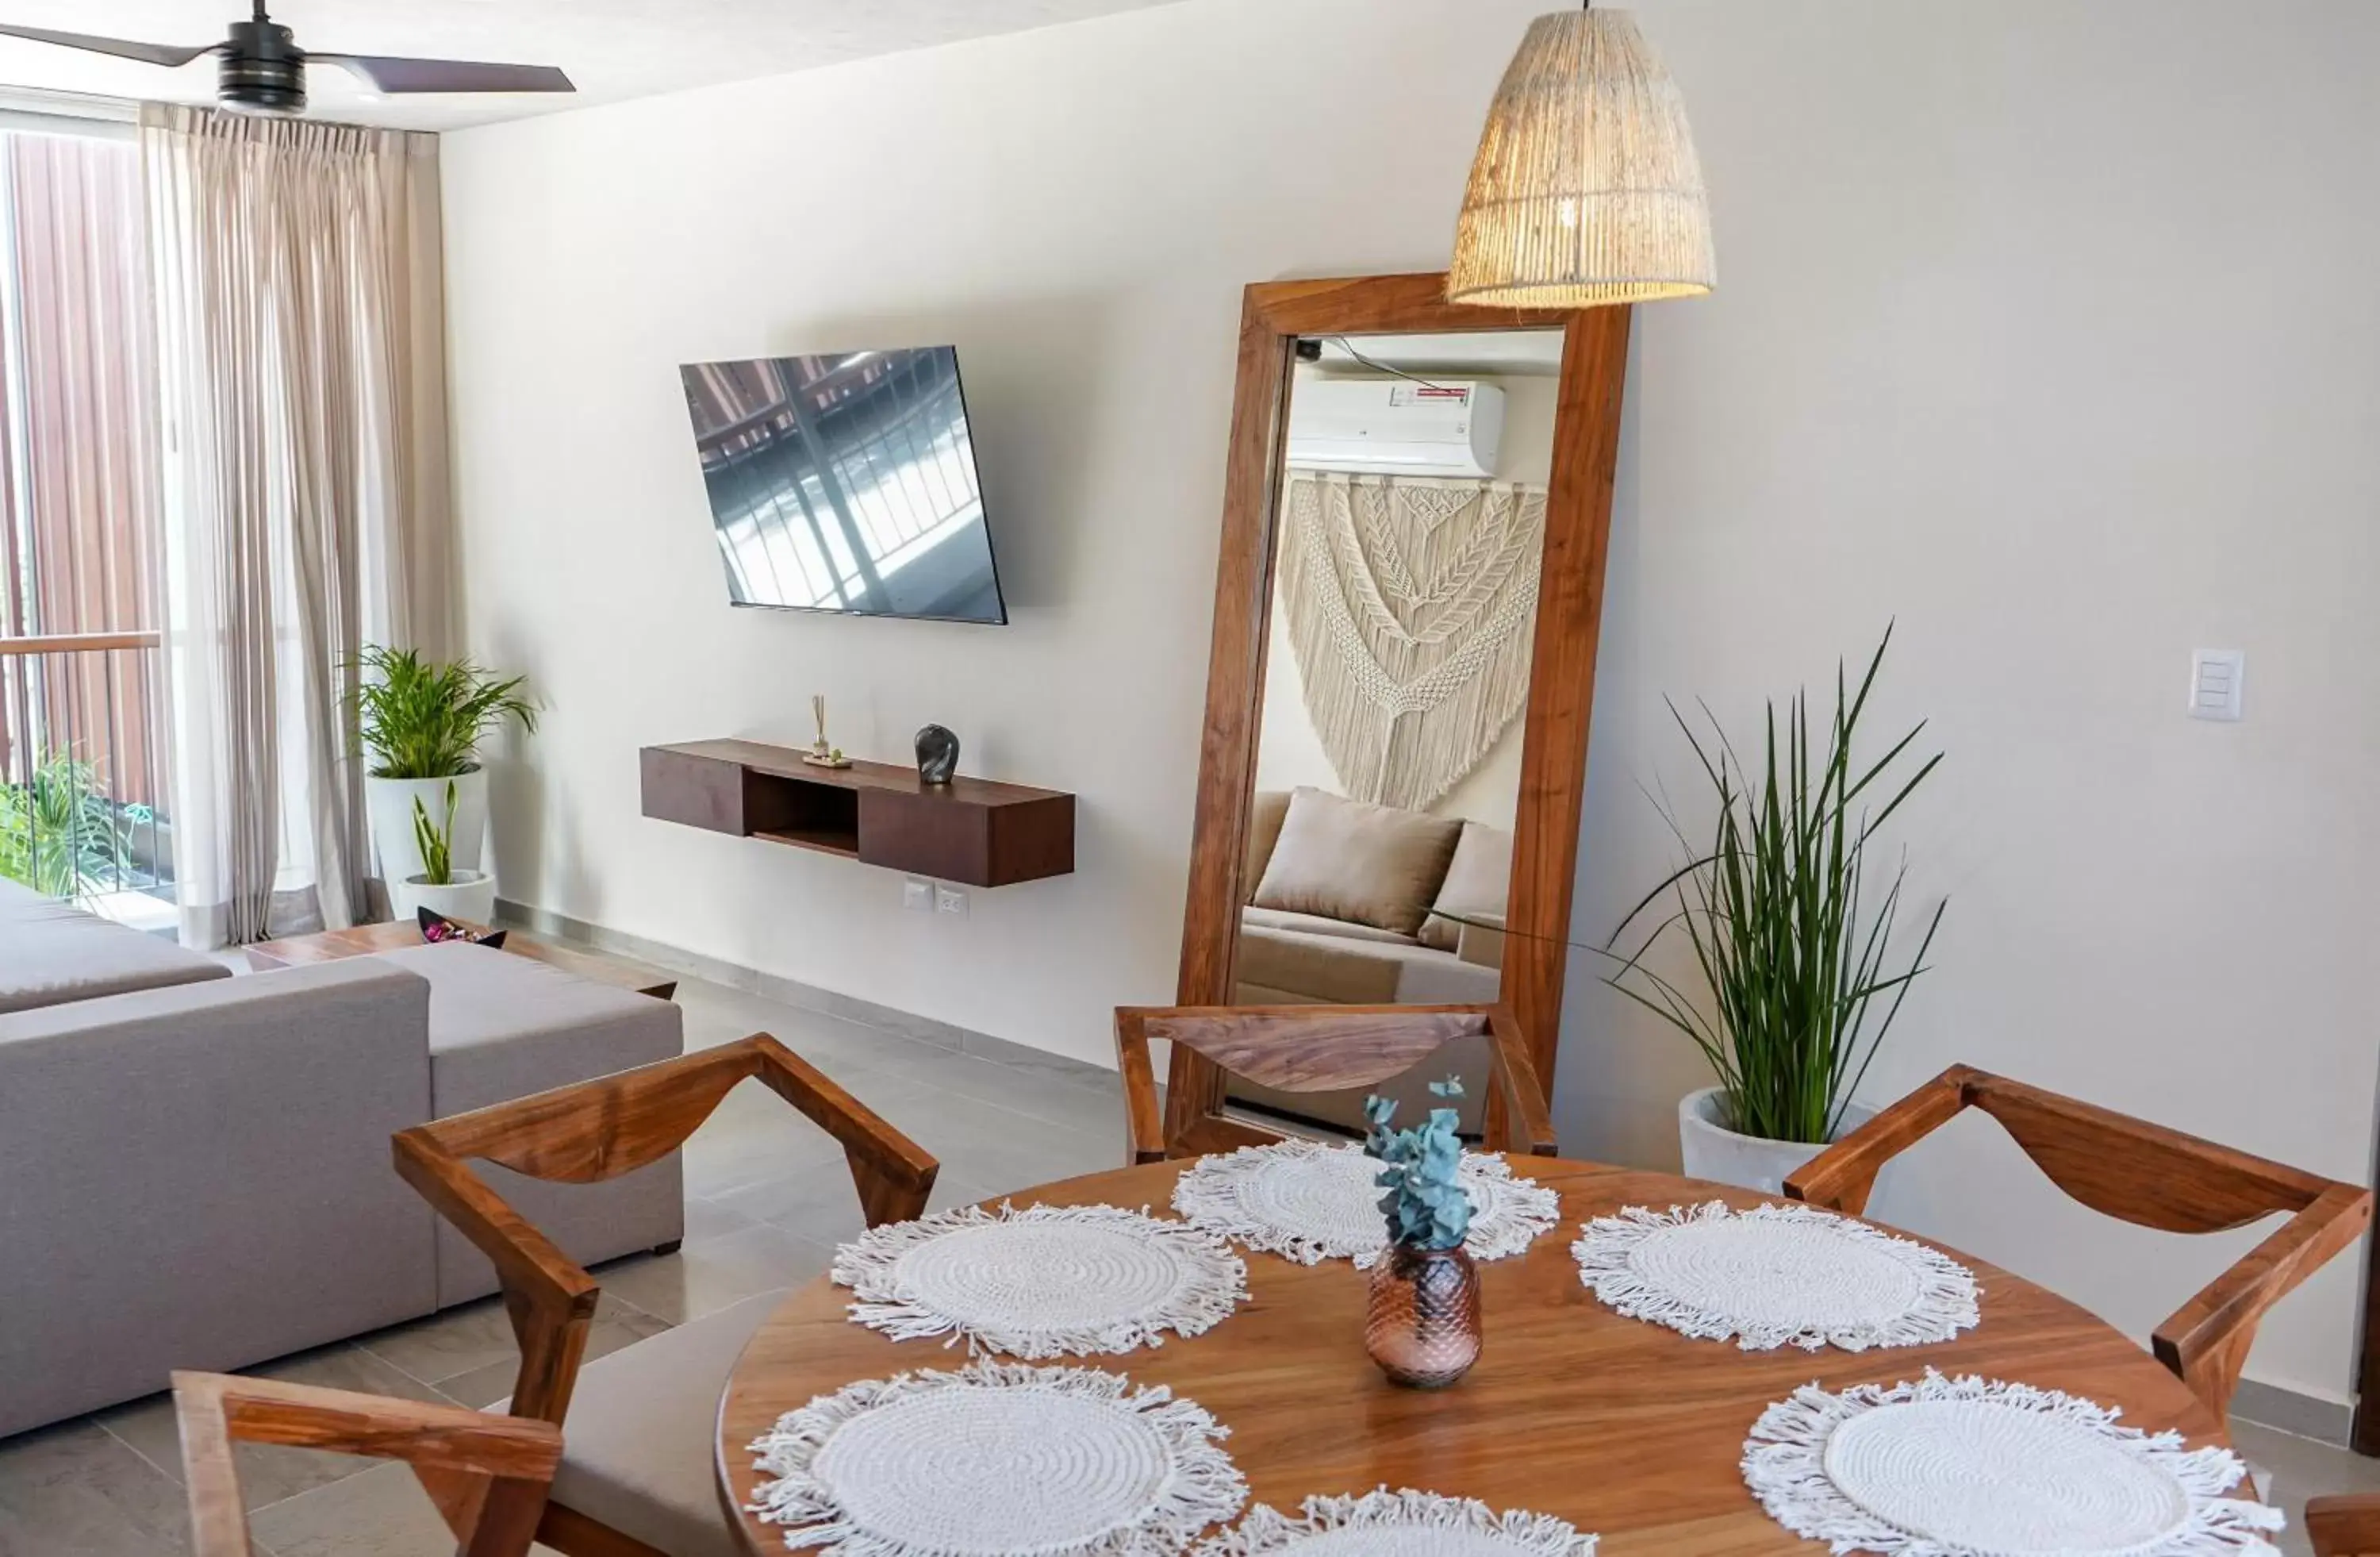 TV and multimedia, Seating Area in ARUNA TULUM-Luxury Studios & Apartments